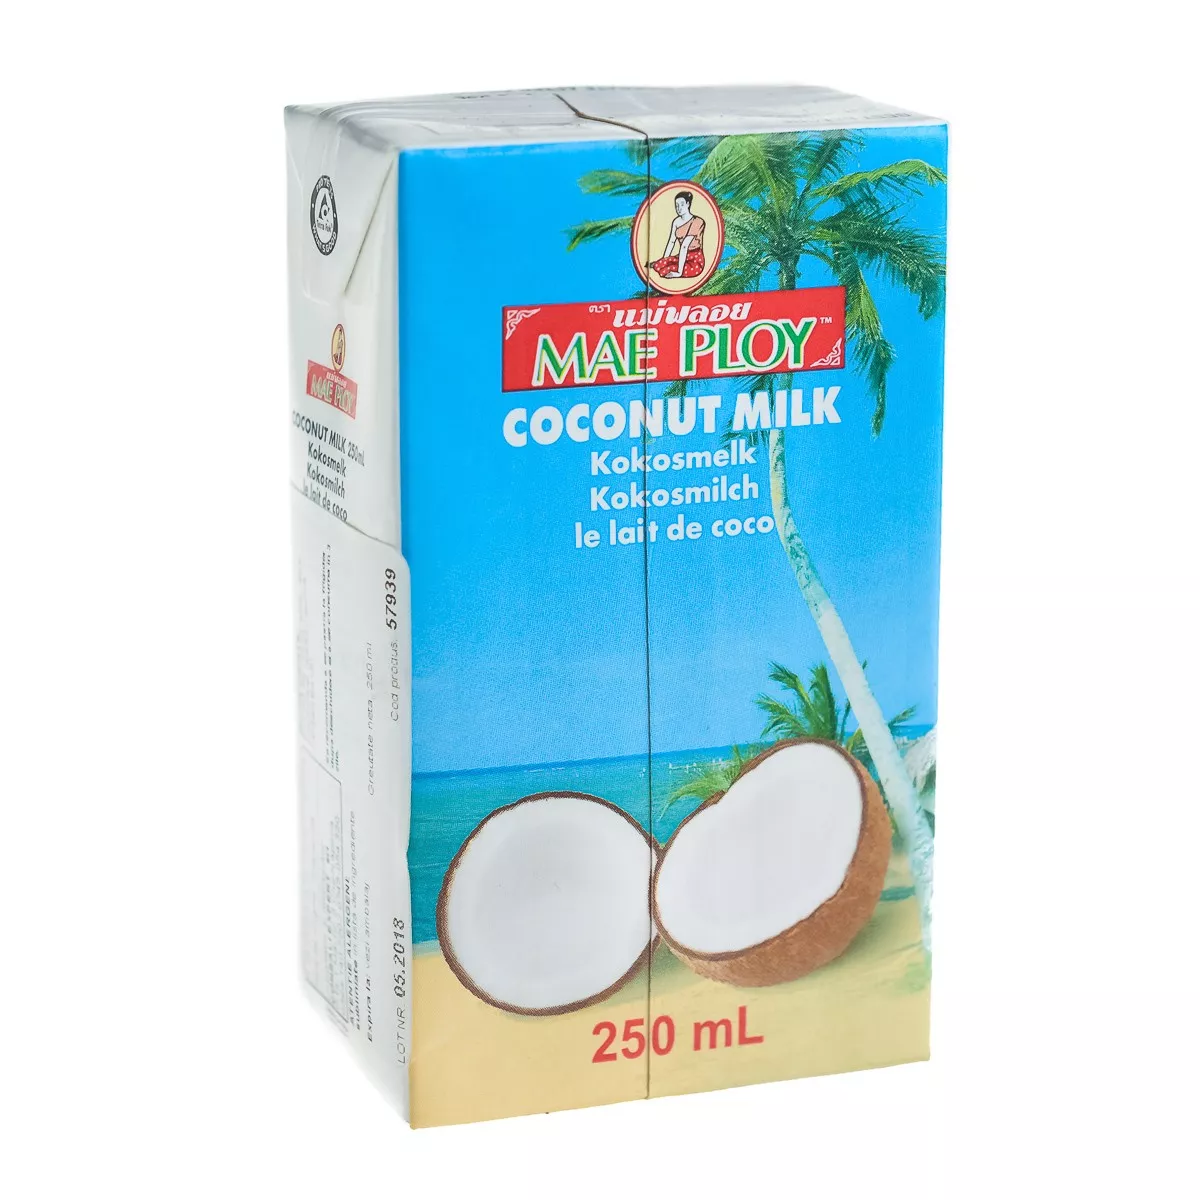 Lapte de cocos MAE PLOY 250ml, [],asianfood.ro